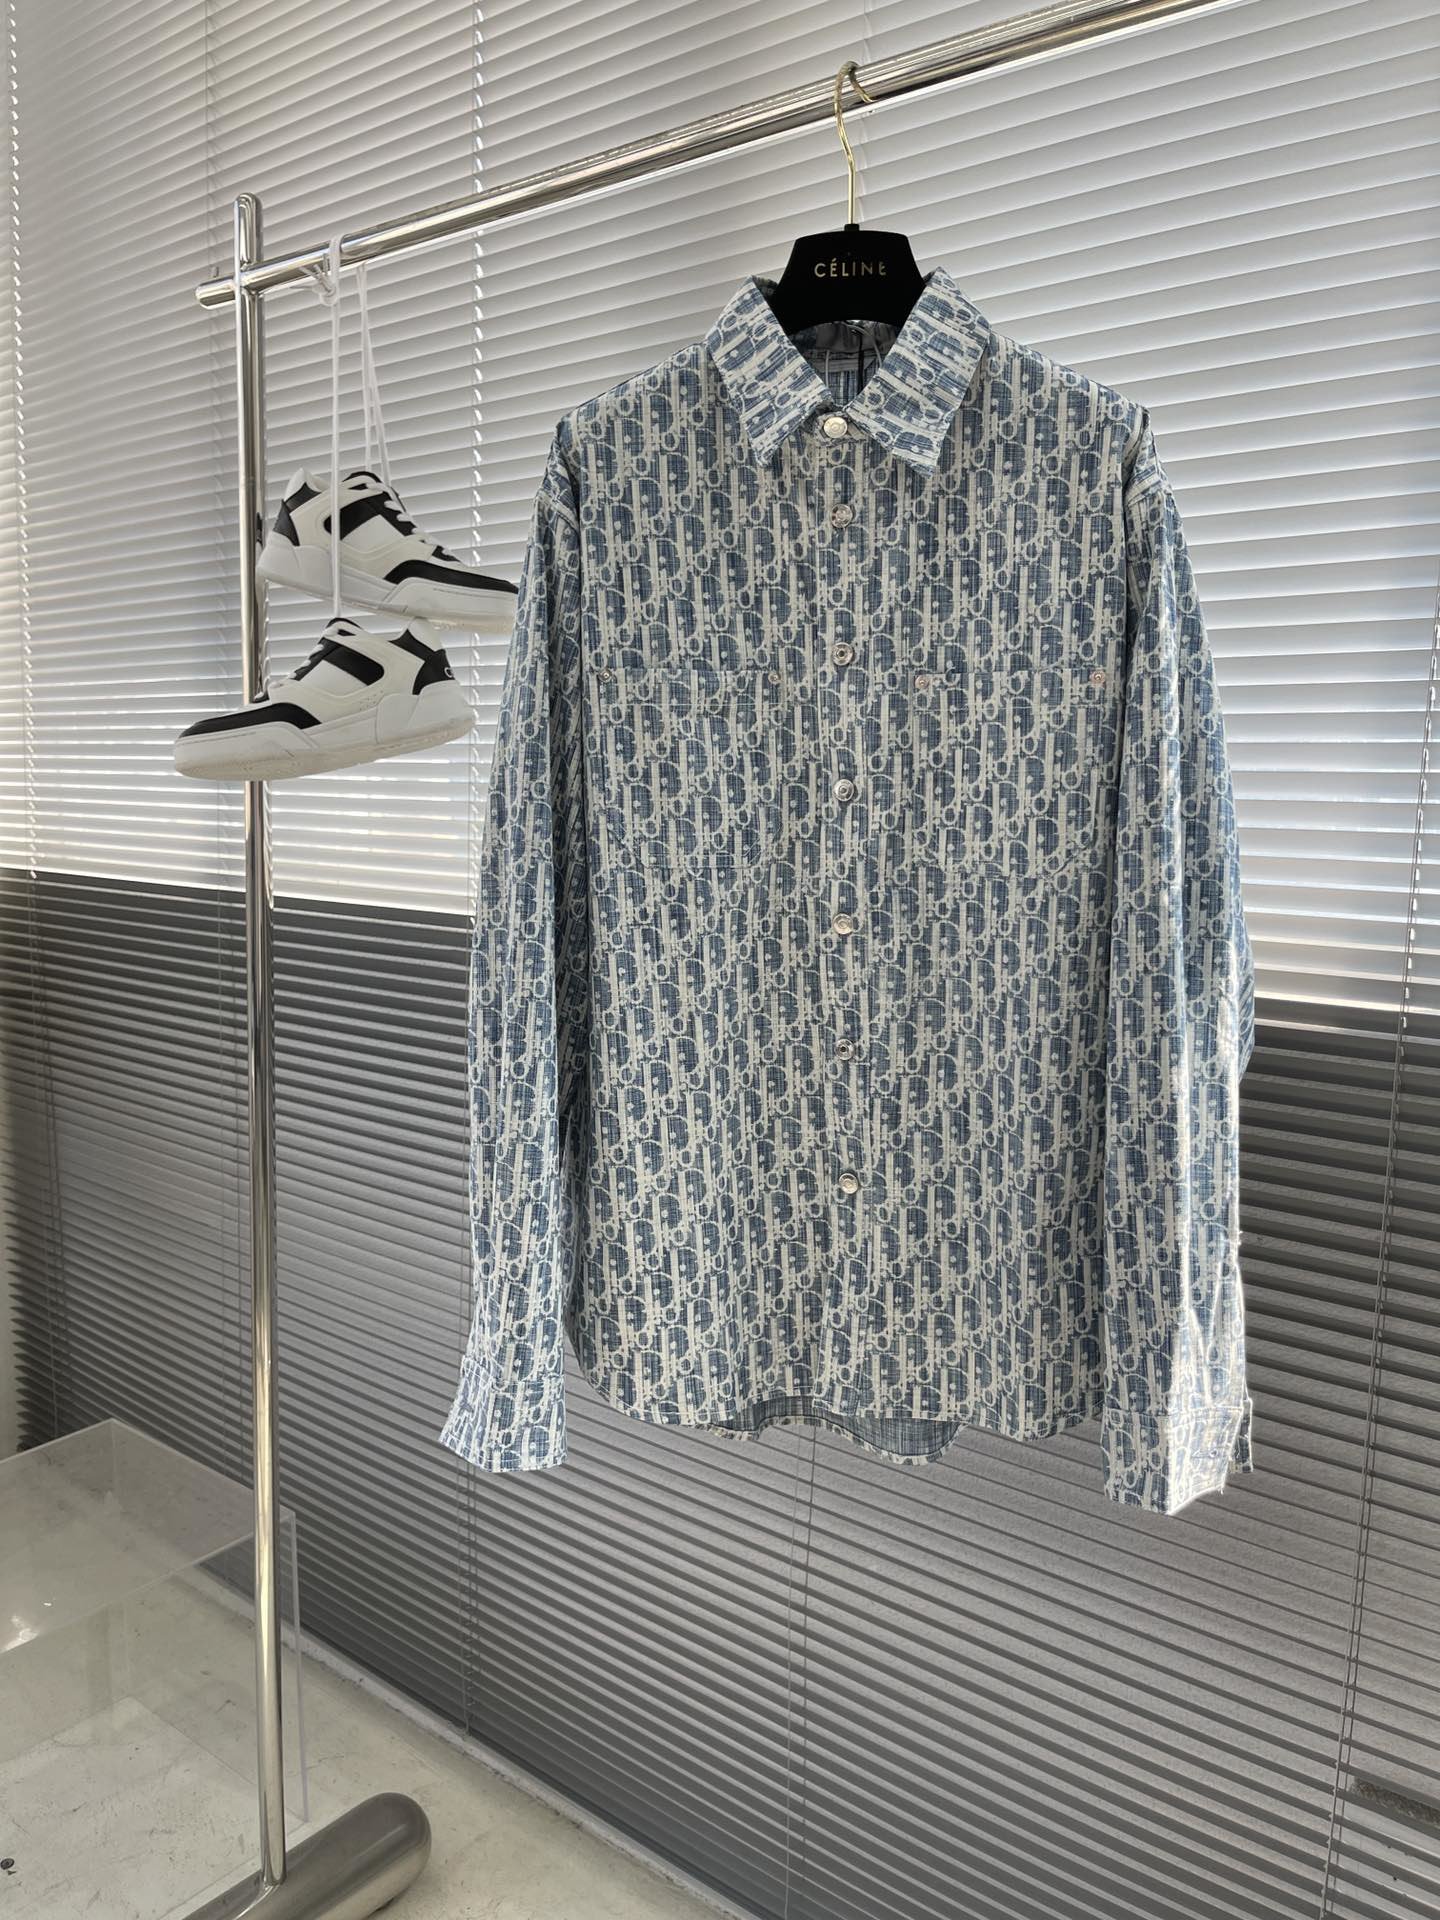 Pezdjs\n\n-Dio 最报款联名牛仔衬衣外套\n这款外套衬衫从日本古老纺织工艺汲取灵感，重新诠释标志性的 Oblique 印花。采用蓝色和白色棉质牛仔布精心制作，通体饰以漂白效果和赤耳细节。可与配套的牛仔裤搭配穿着，打造浑然一体的造型。\n通体饰以白色 Oblique Kasuri 印花\n赤耳细节\n纽扣门襟\n镌刻有“DIO”标志的按扣\n胸前贴袋\n100% 棉\n码数：38.39.40.41\n\n尺码  胸围  衣长  肩宽  \n38\t    yydsw\t  qwel\t